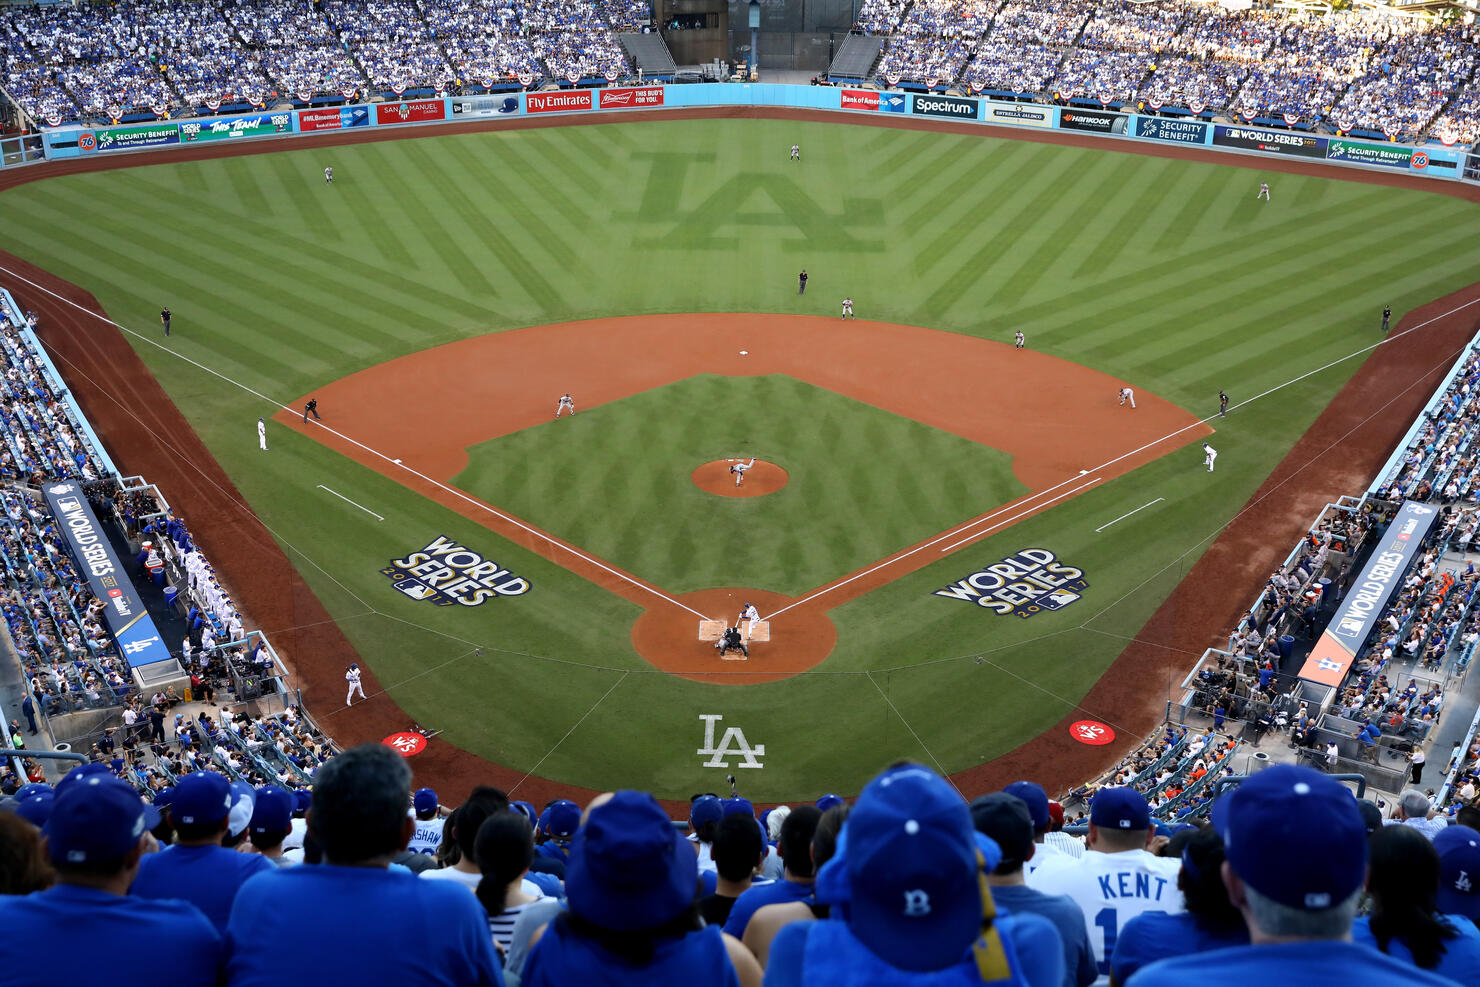 Dodgers sign deal to host concerts at Dodger Stadium